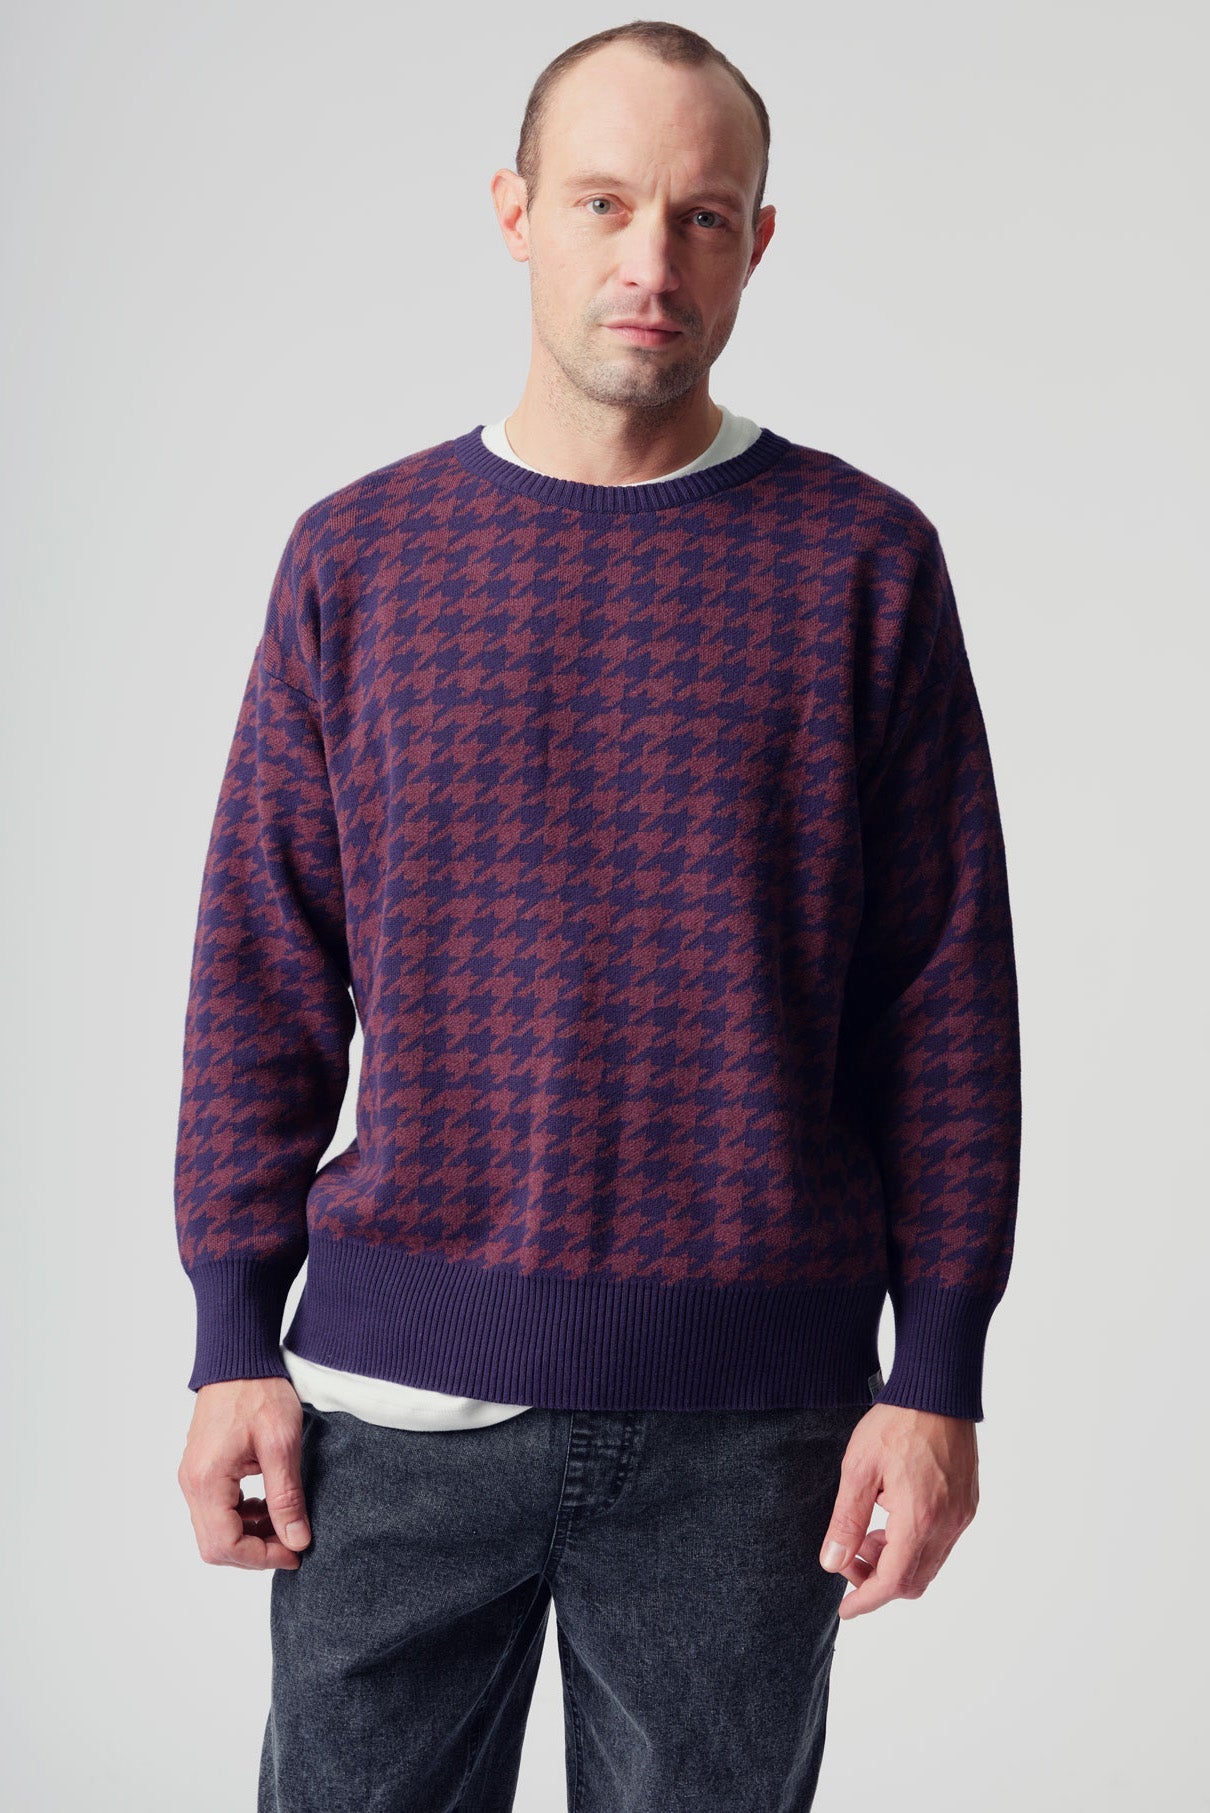 Bunt karierter Sweater SACHIO aus 100% Bio-Baumwolle von Komodo